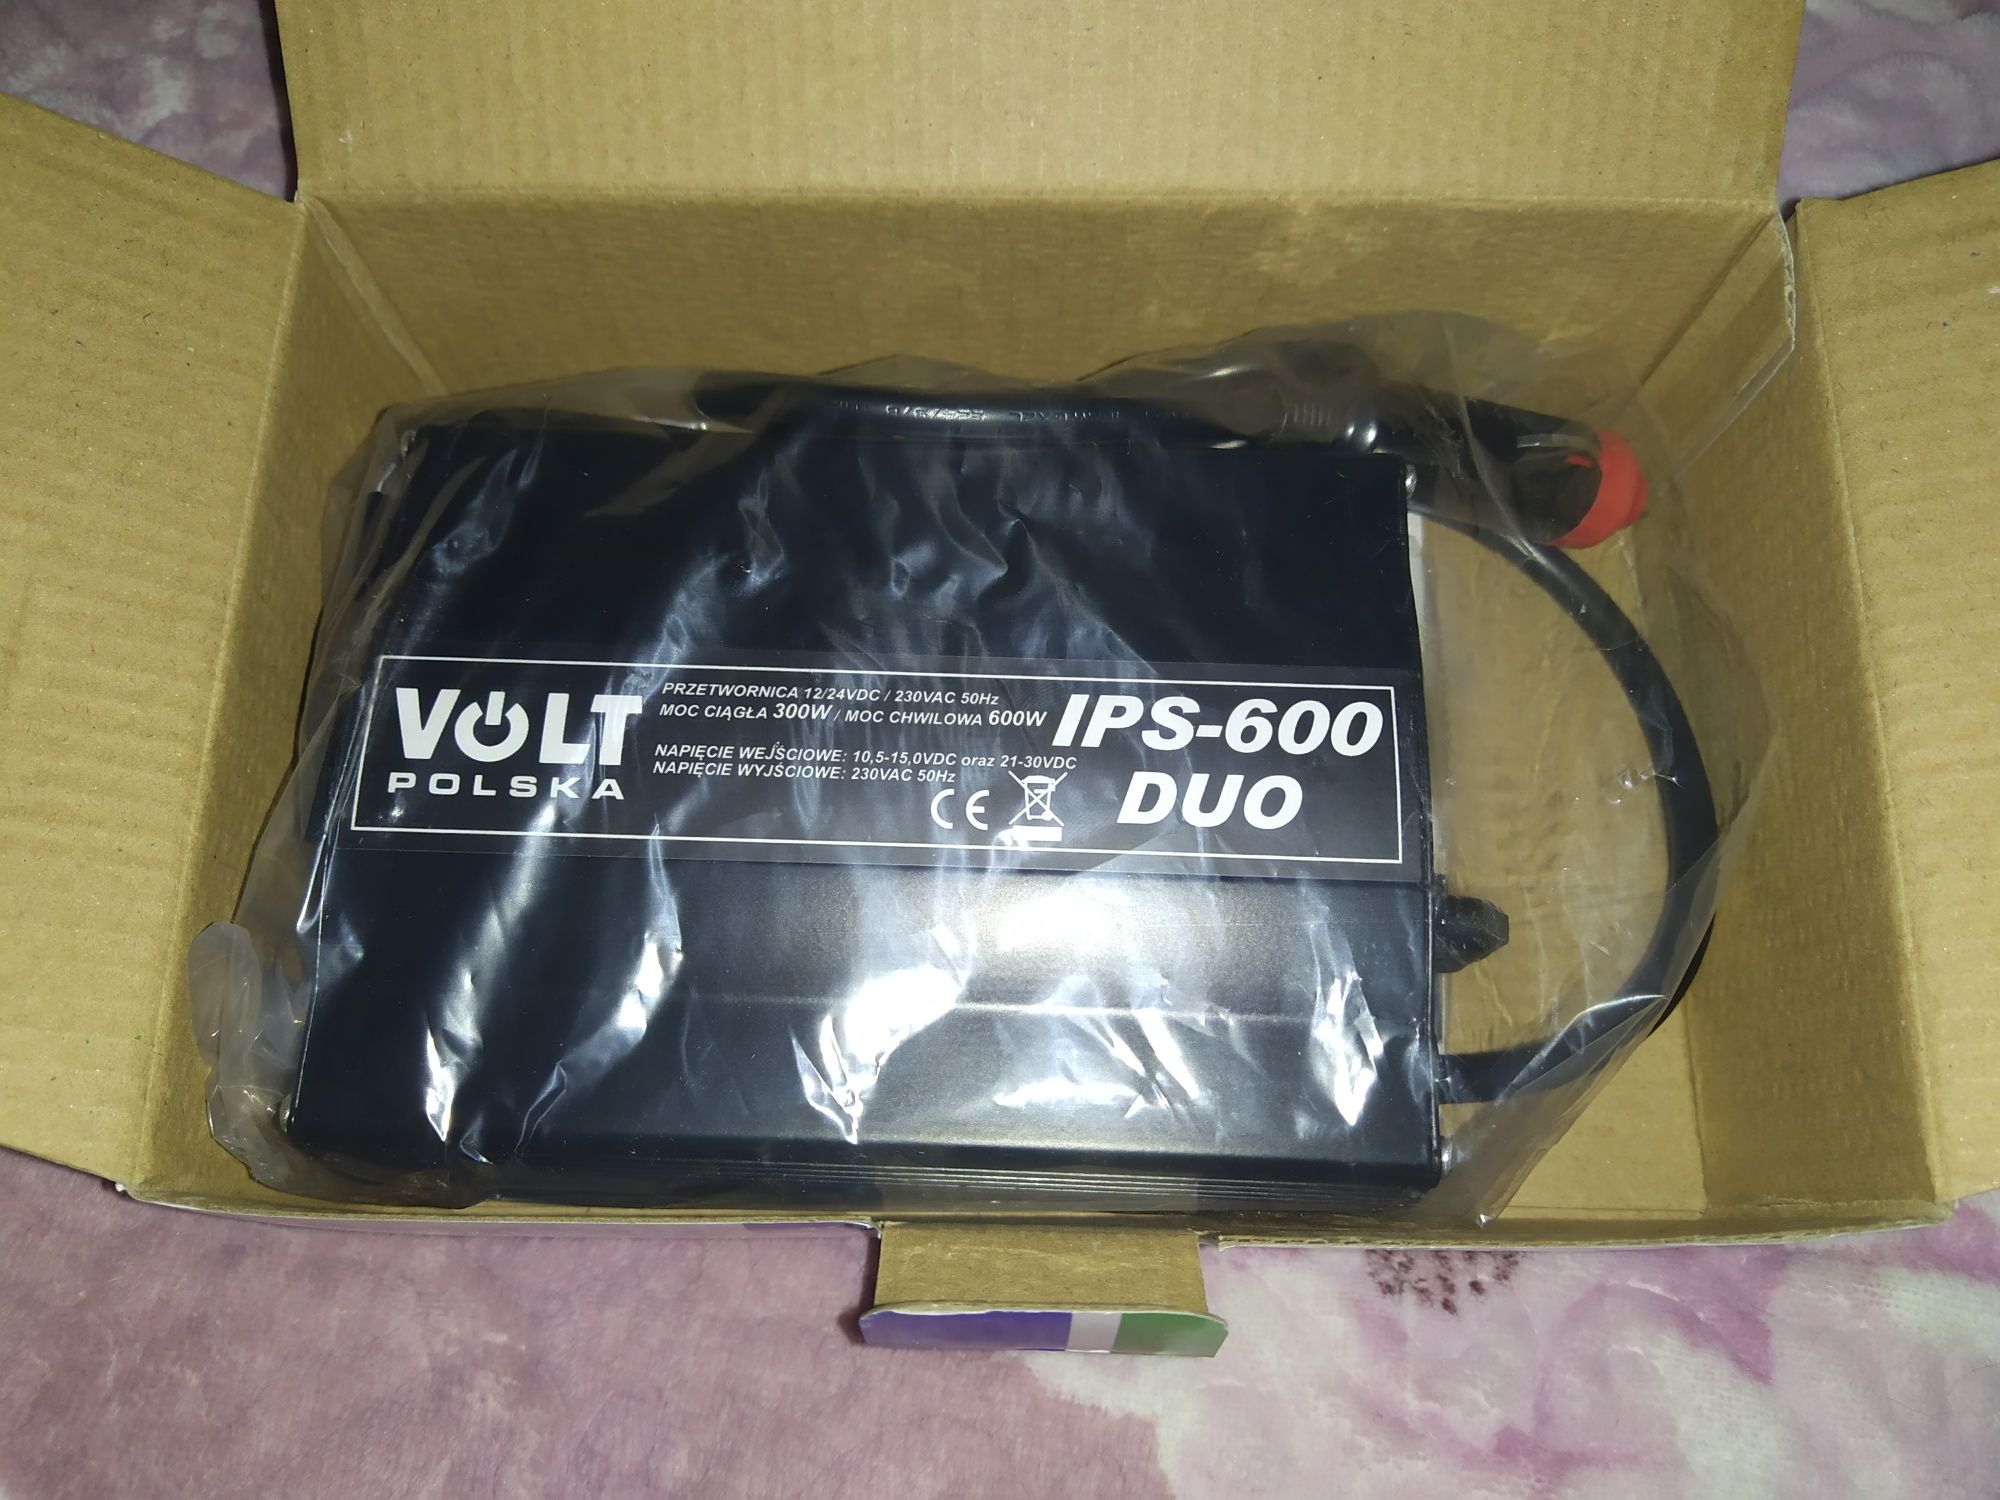 Продам перетворювач В НАЯВНОСТІ (інвертор) VOLT IPS 600 Duo 12V/24V -